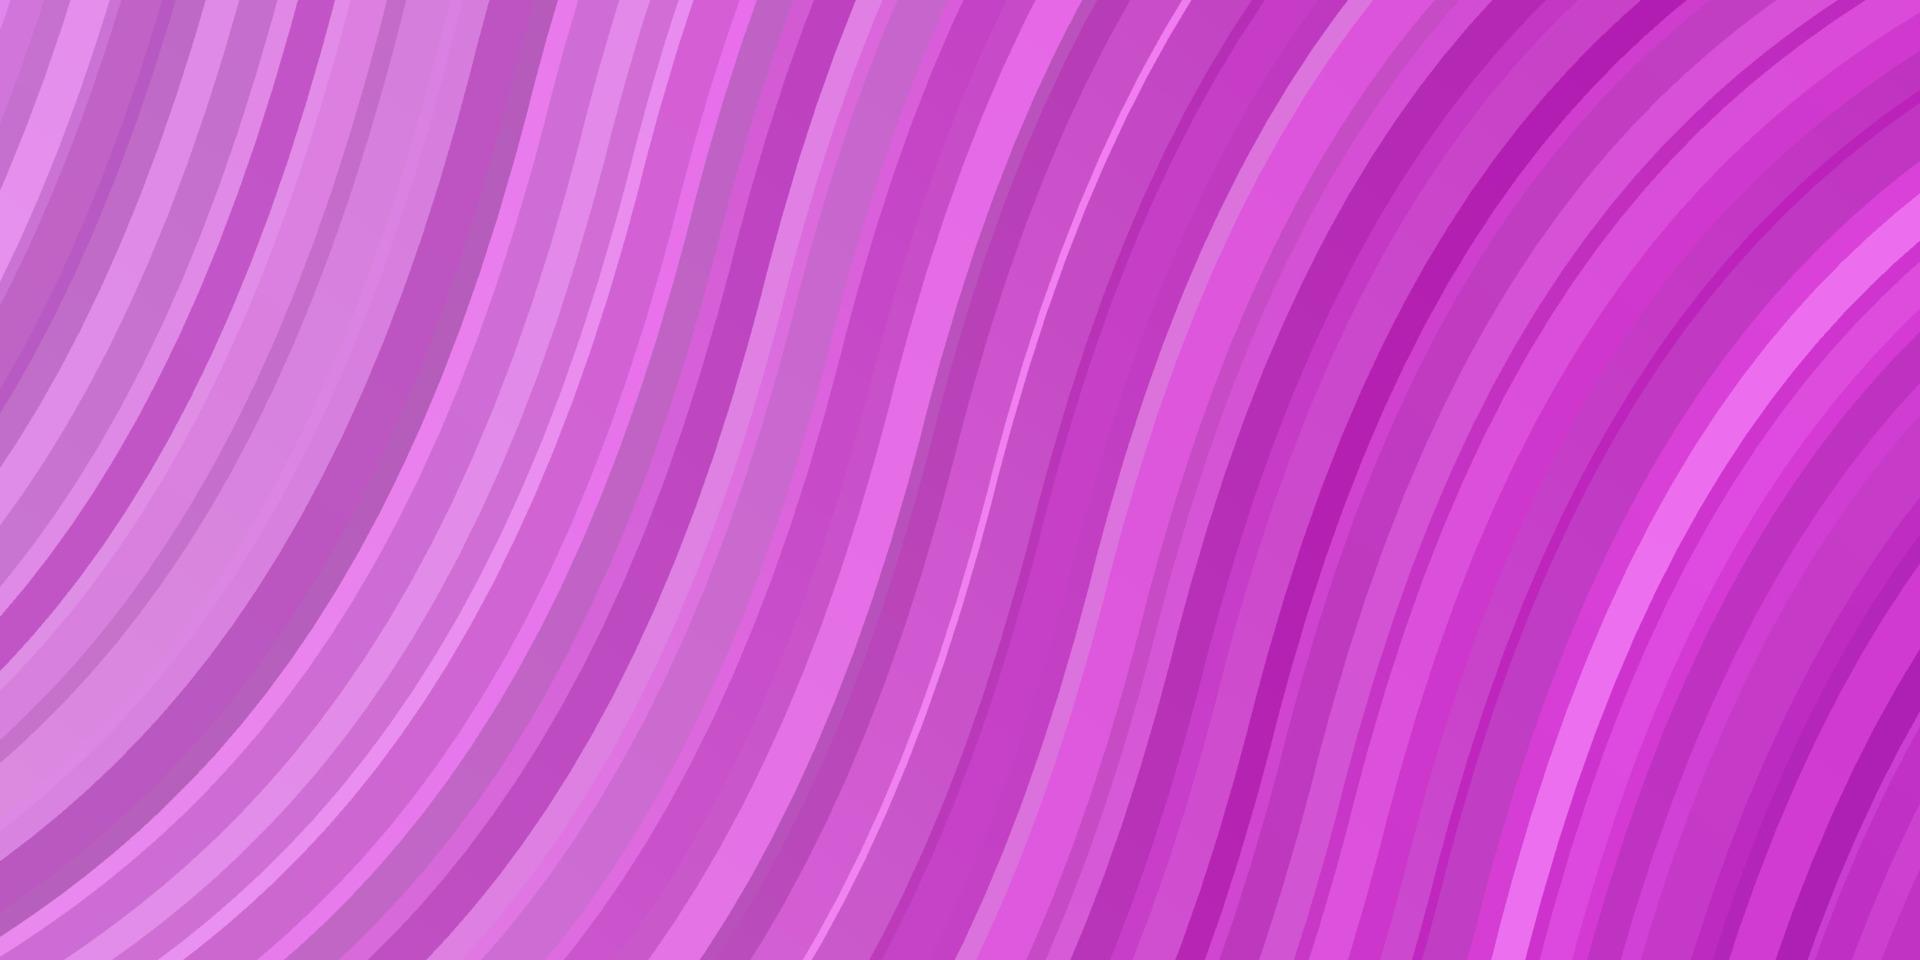 modelo de vetor rosa claro com linhas curvas.